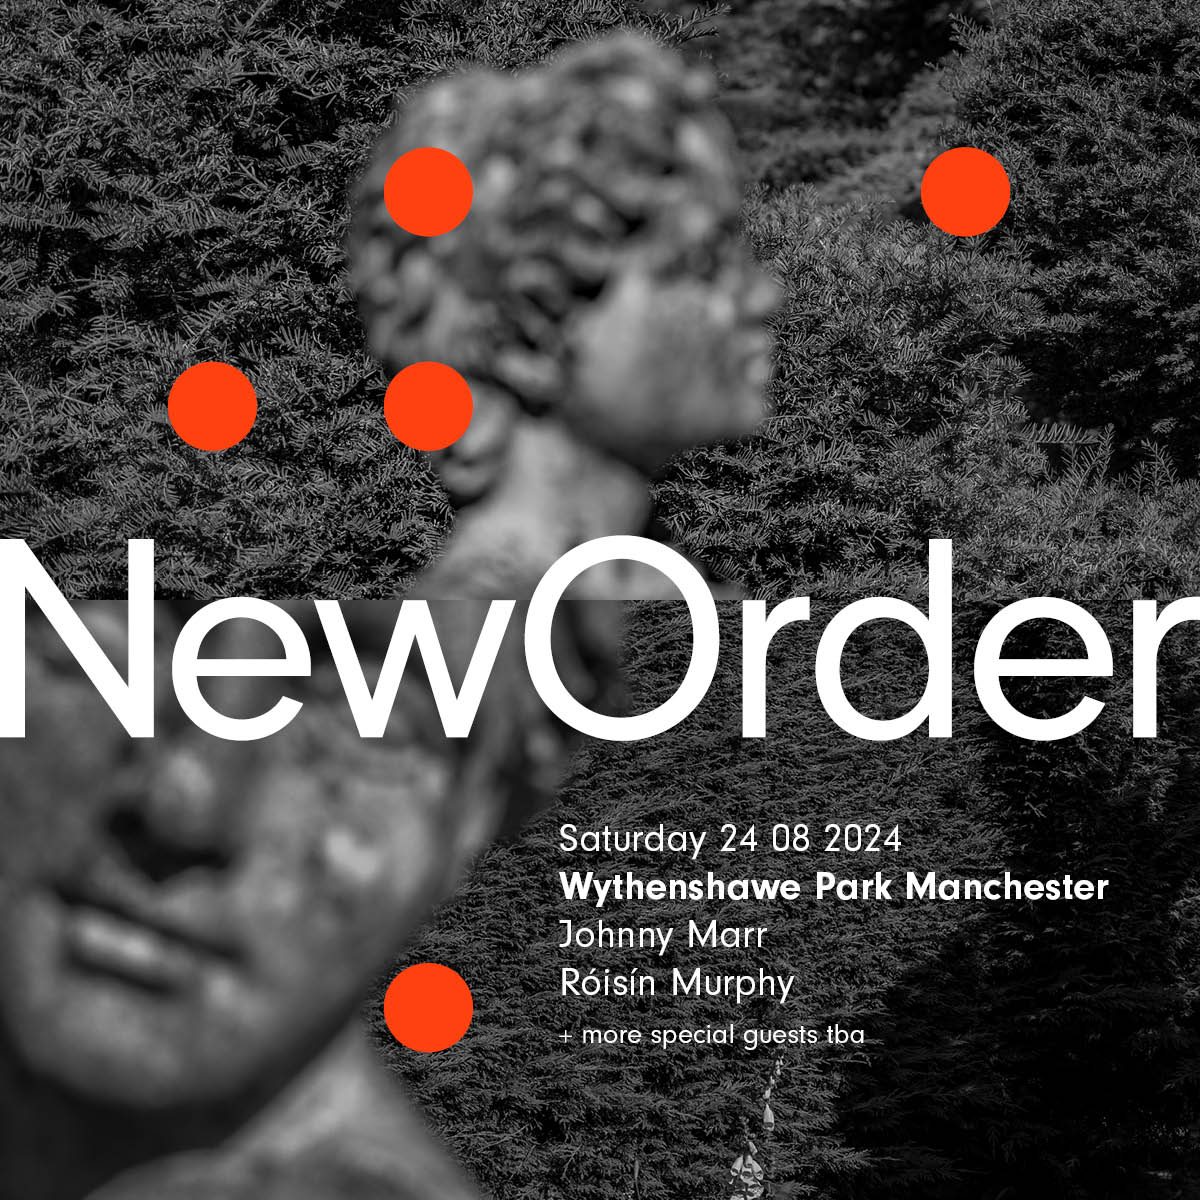 New Order have announced a huge Wythenshawe Park gig.